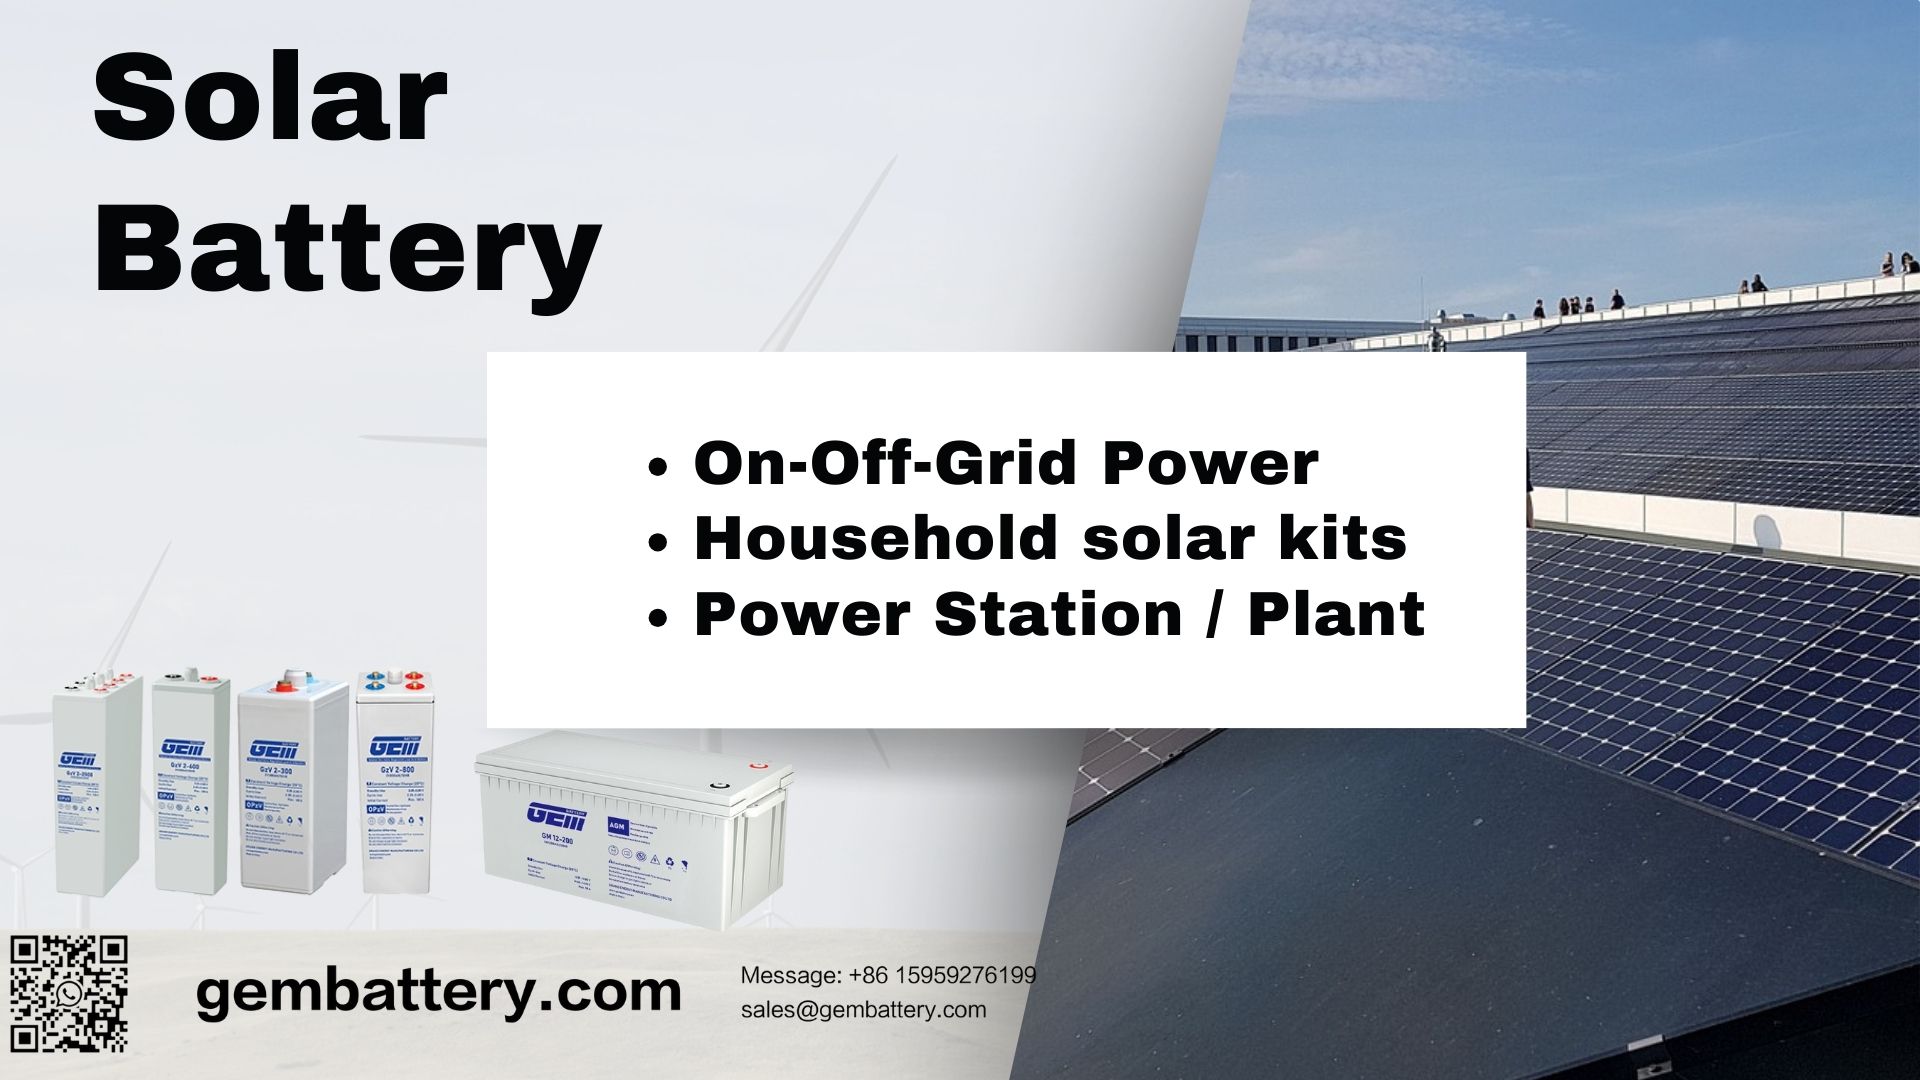 výrobce solárních baterií